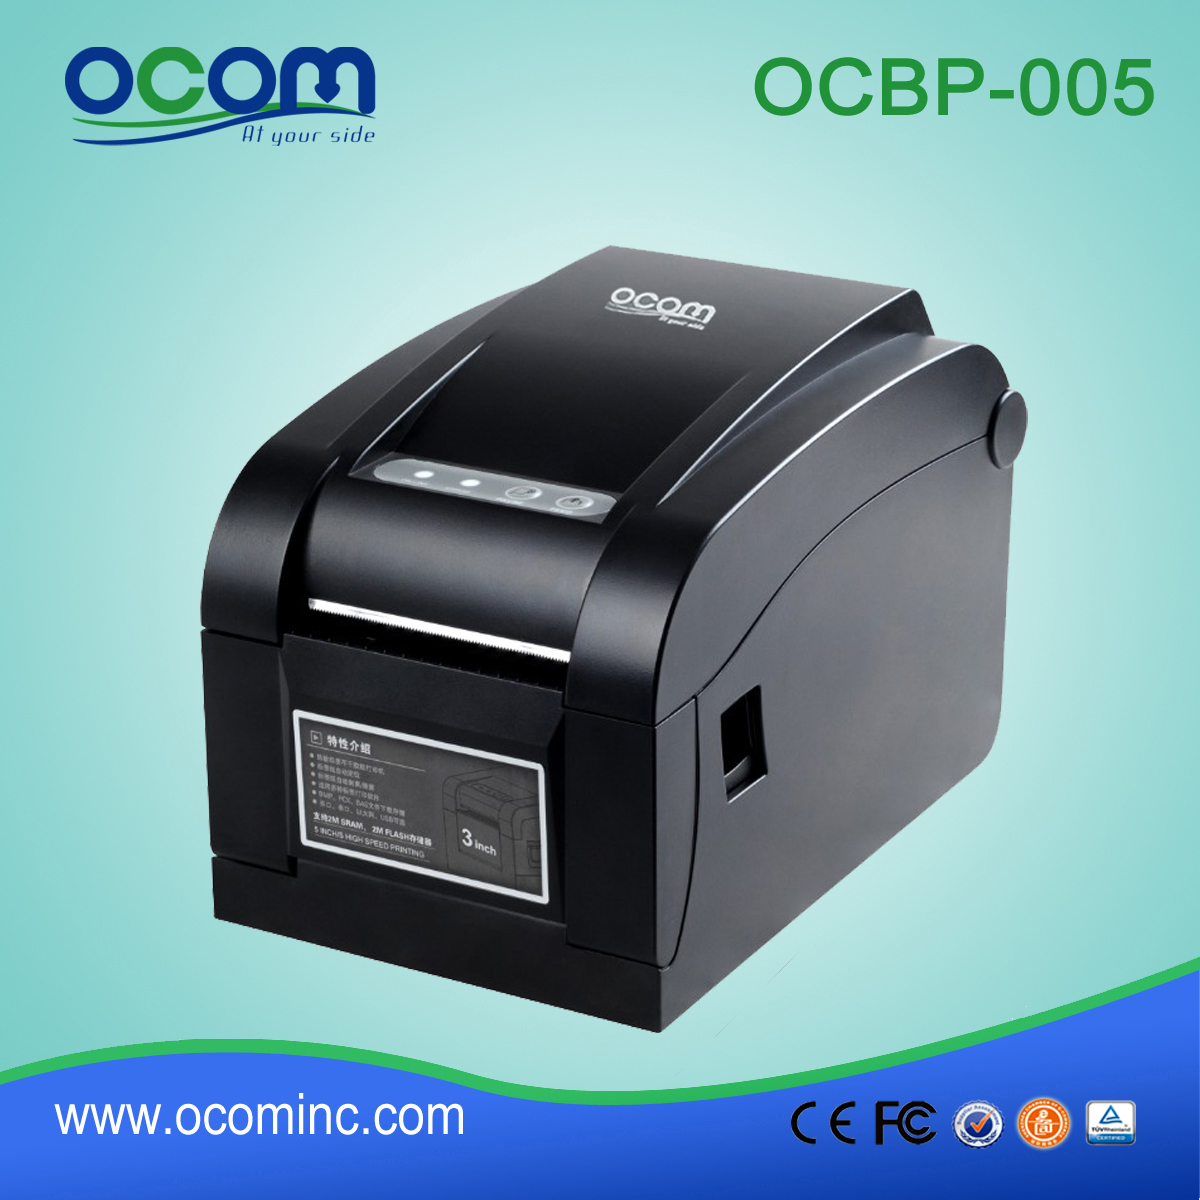 OCBP-005-URL Stampante per etichette con codice a barre termico a larghezza di 16mm-82mm